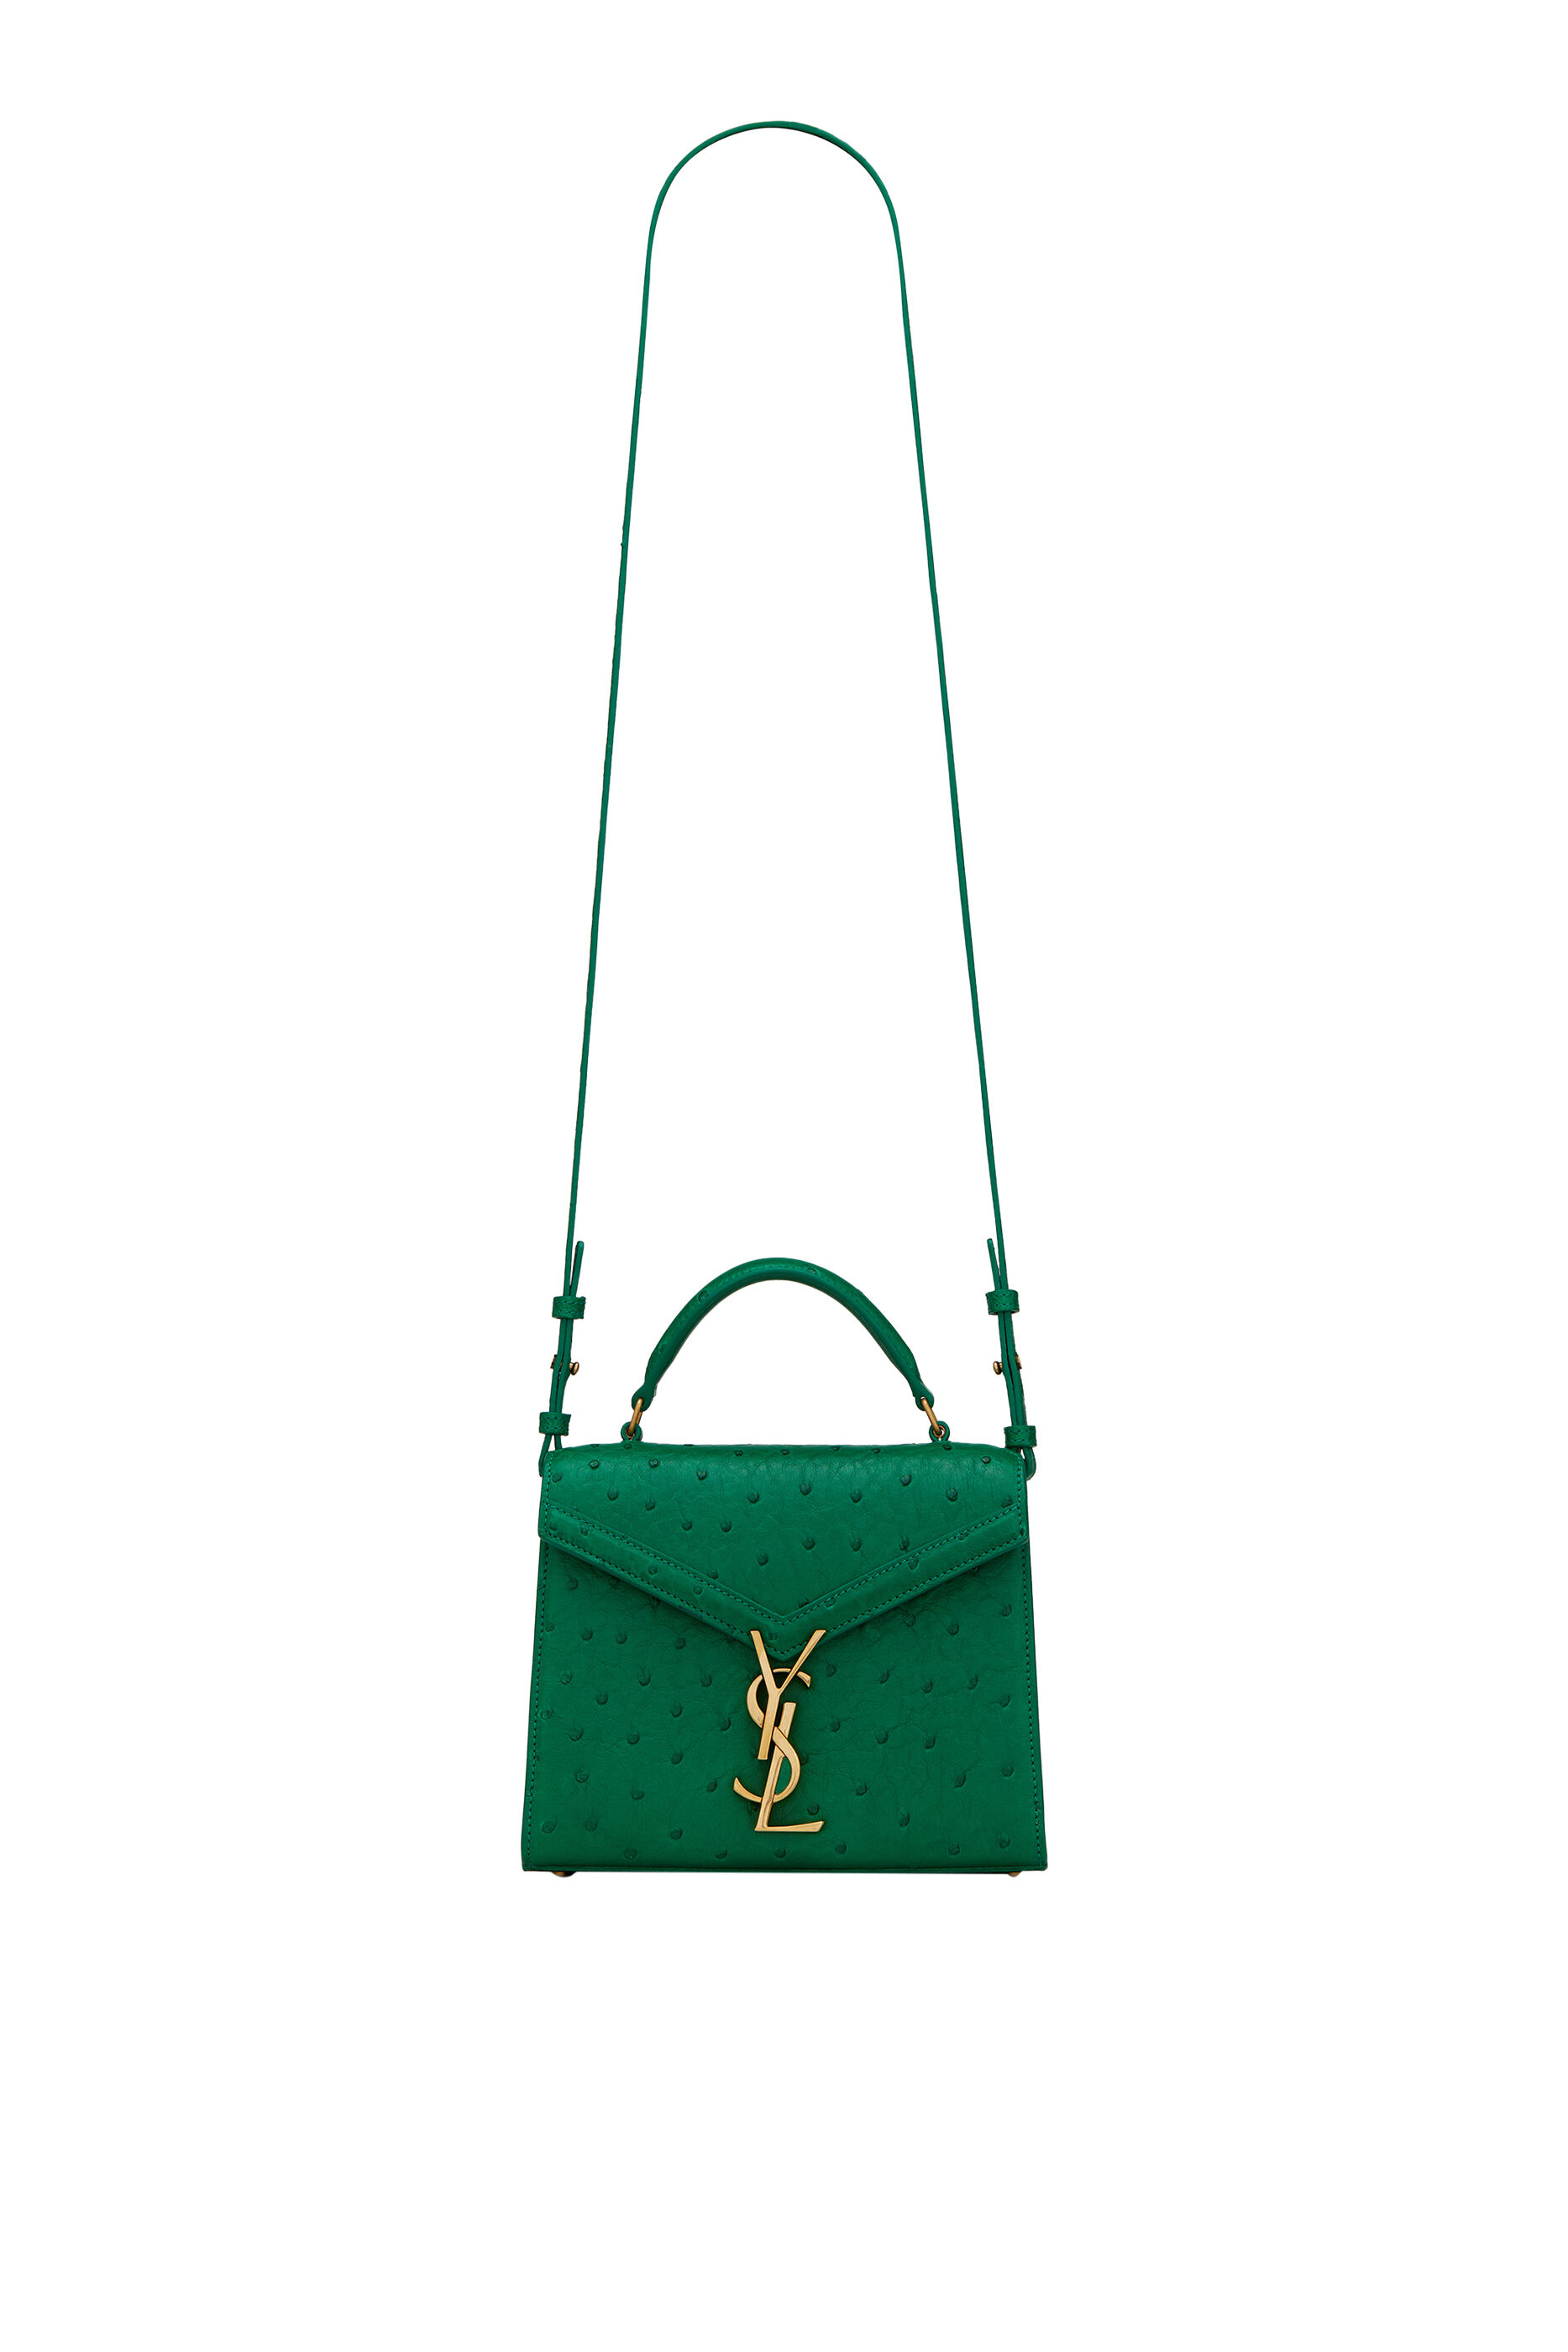 YSL Medium West Hollywood bag - The Luxury Flavor